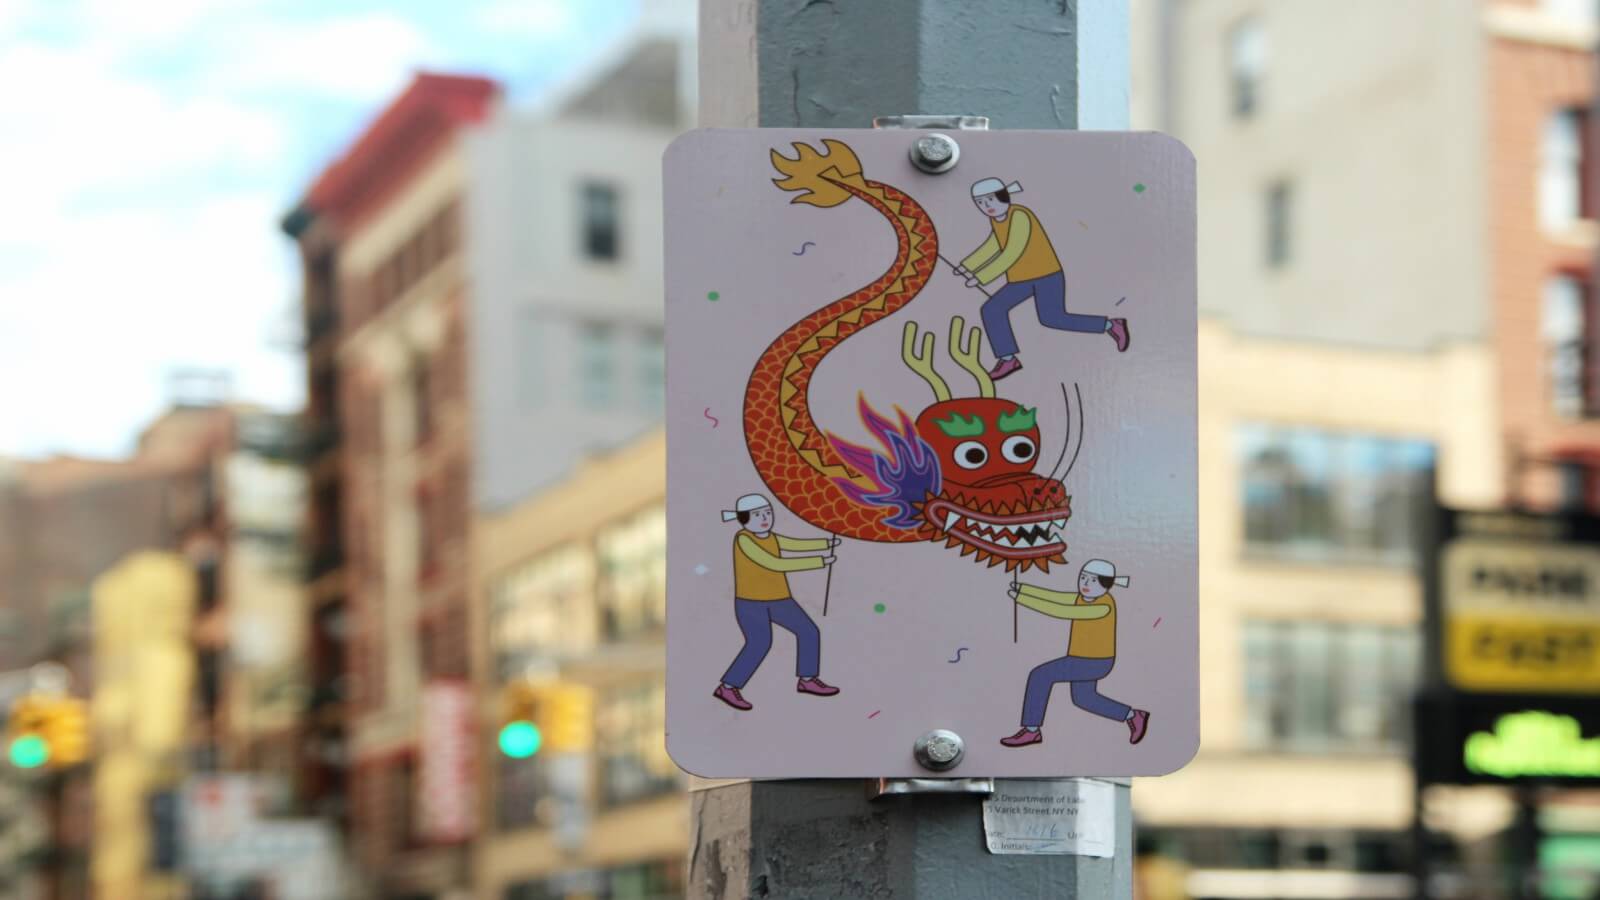 Señalamientos ilustrados en el Barrio Chino de NY